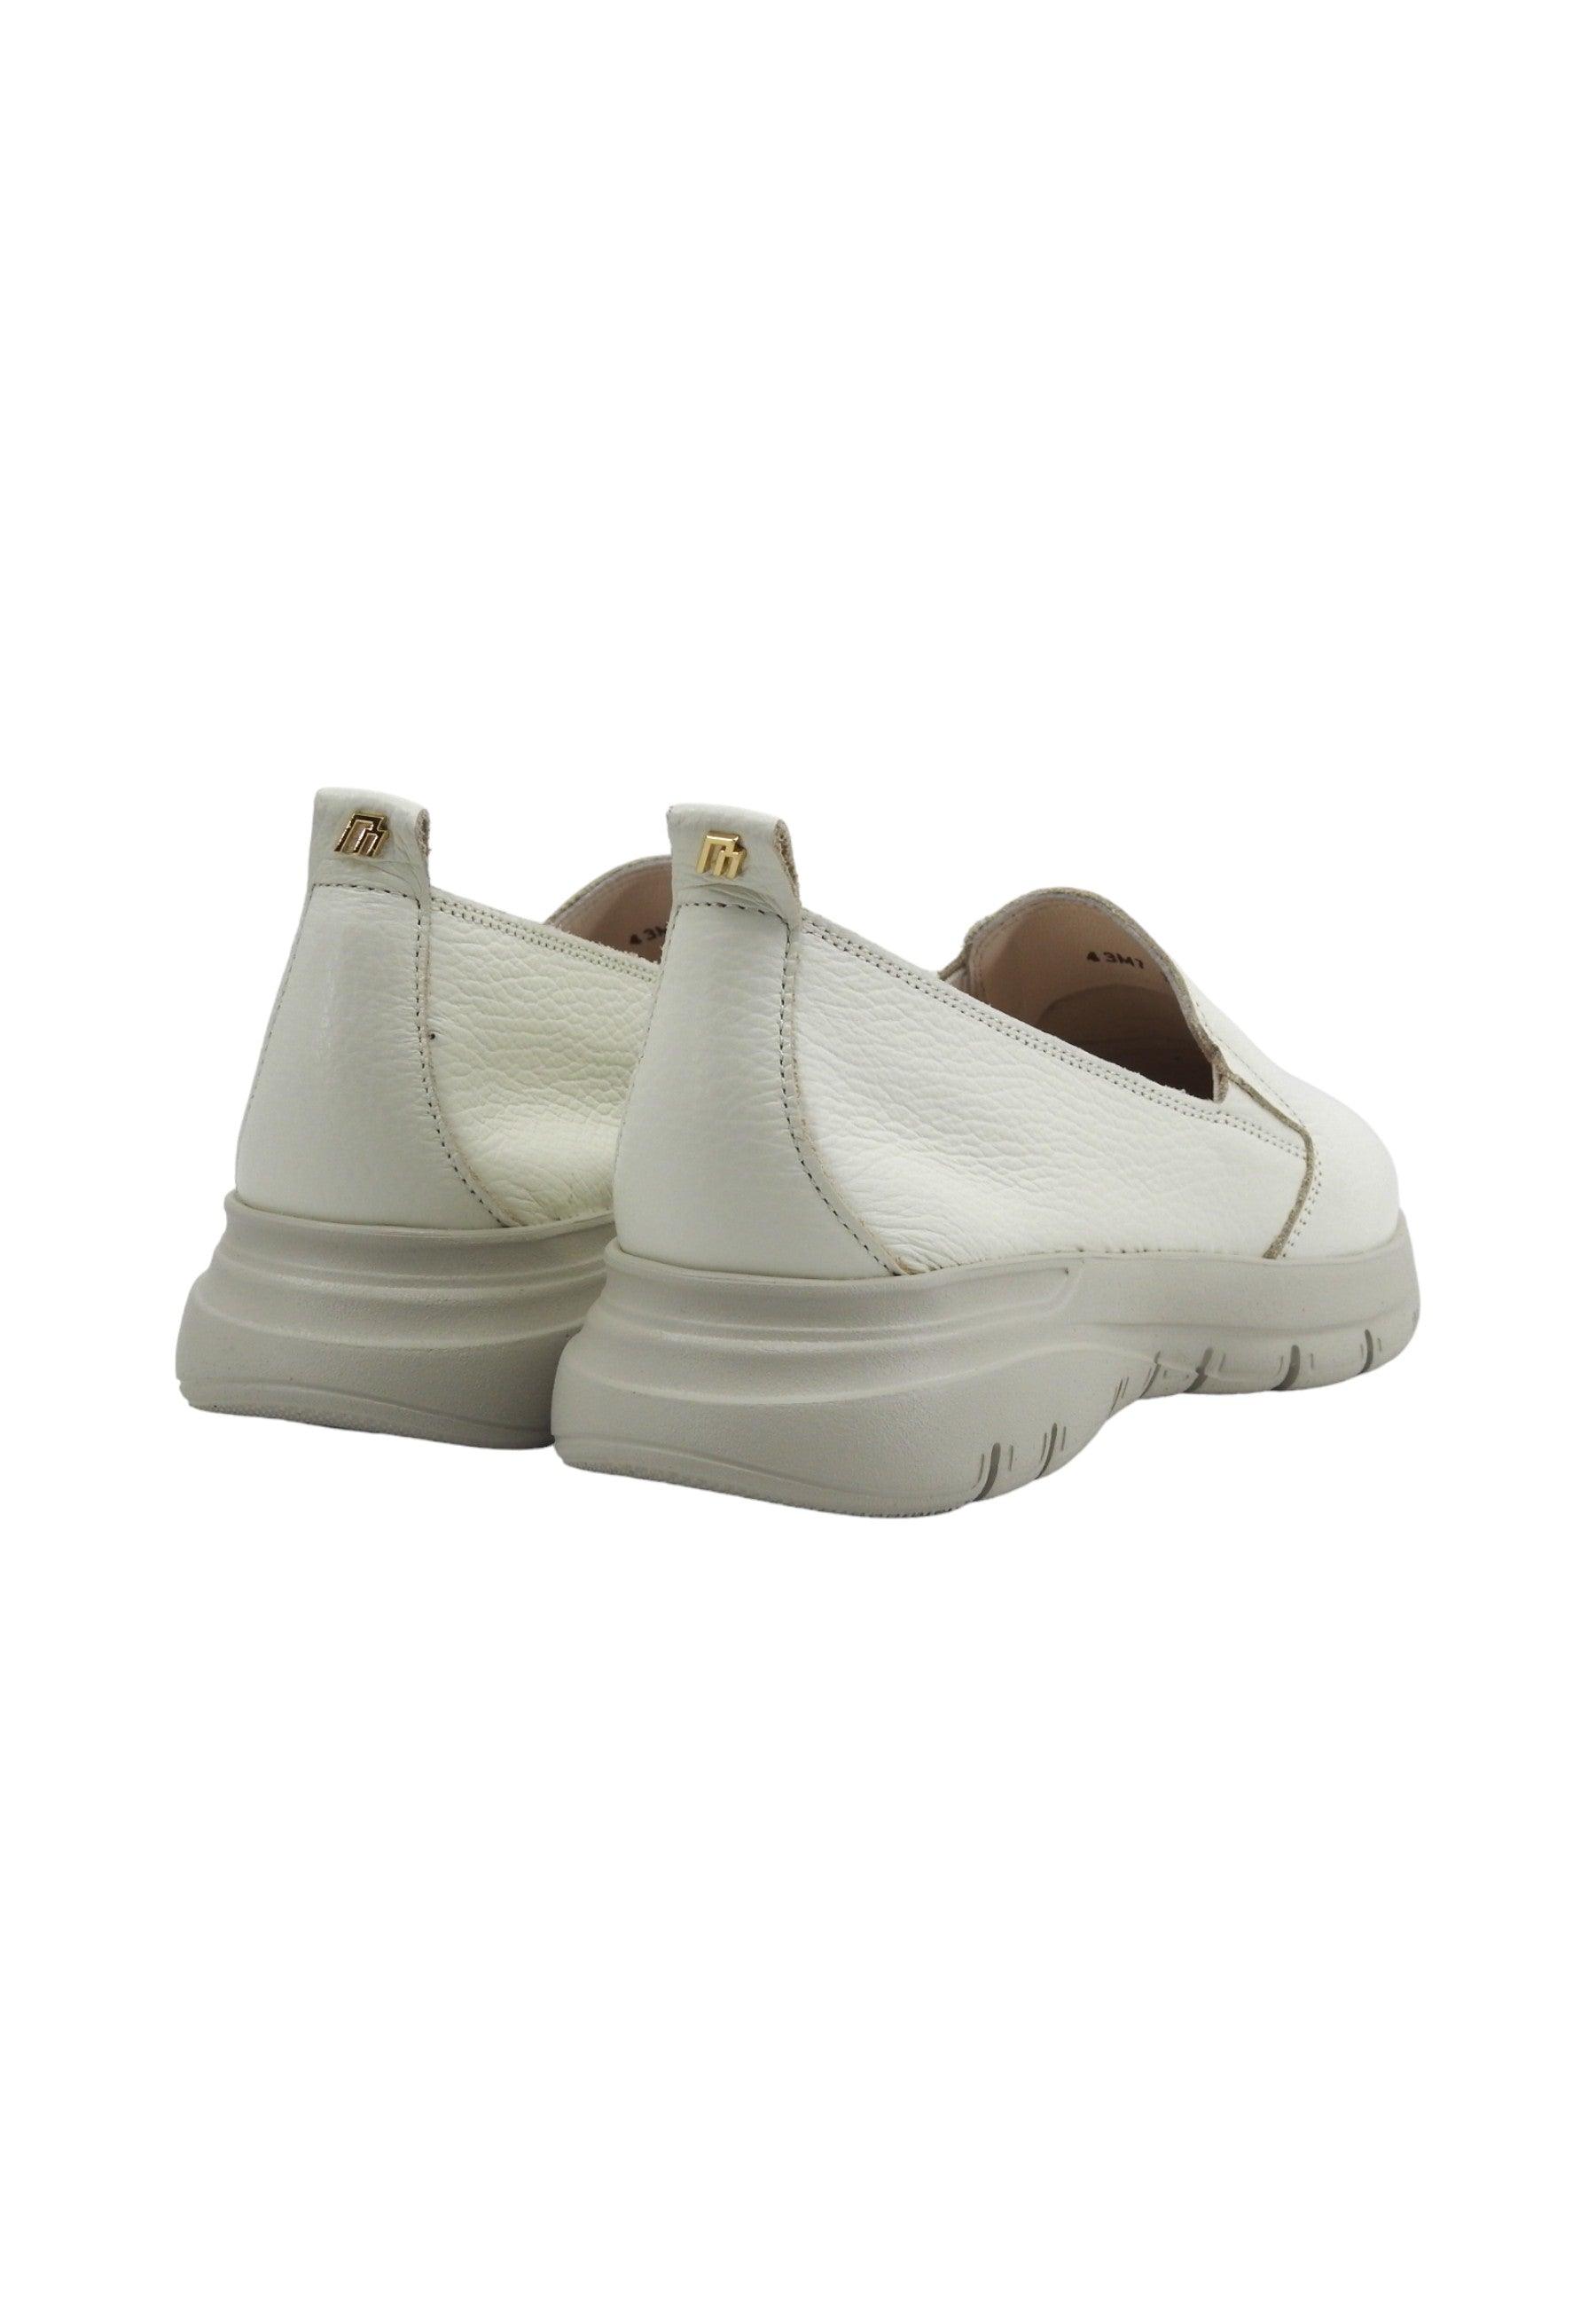 FRAU Eagle Sneaker Slip On Donna Off White 43M7115 - Sandrini Calzature e Abbigliamento